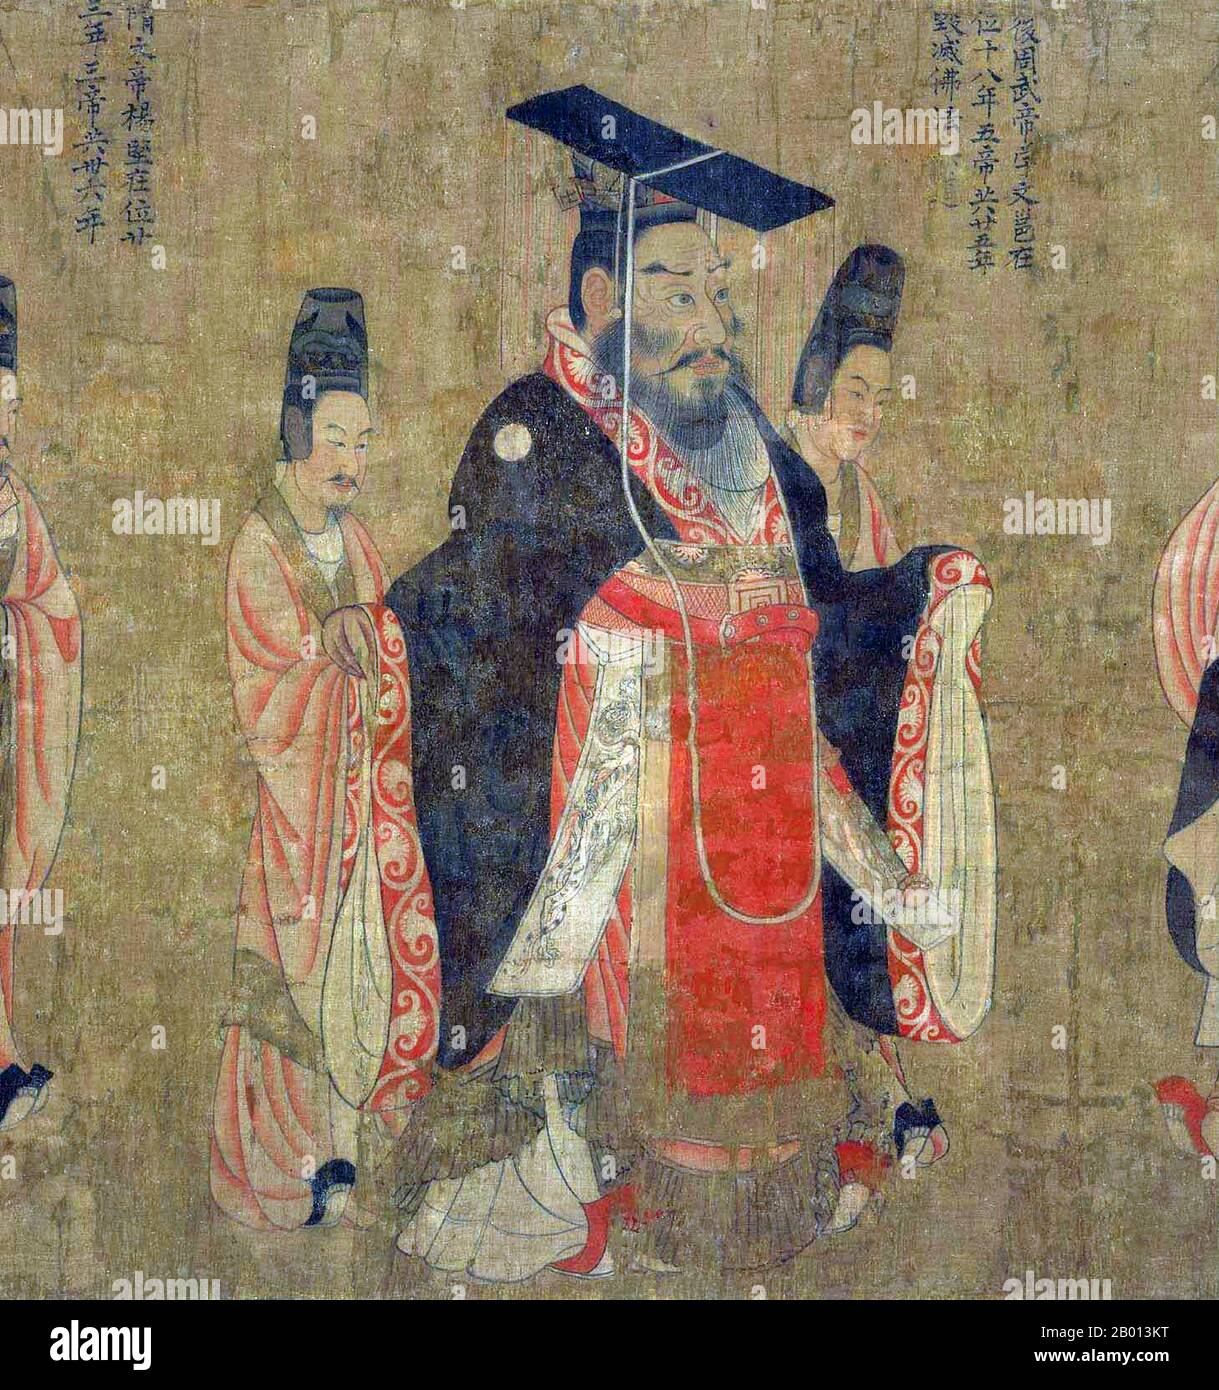 China: Kaiser Wu von Nord-Zhou (543–578). Handscroll-Gemälde aus der „Schriftrolle der dreizehn Kaiser“ des Hofmalers Yan Liben aus der Tang-Dynastie (600-673), 7. Jahrhundert. Kaiser Wu von Nord-Zhou, persönlicher Name Yuwen Yong und Spitzname Miluotu, war ein Kaiser der Nord-Zhou-Dynastie. Wie bei den Regierungszeiten seiner Brüder Kaiser Xiaomin und Kaiser Ming wurde der frühe Teil seiner Regierungszeit von seinem Cousin Yuwen Hu dominiert, aber 572 überfiel er Yuwen Hu und ergriff persönlich die Macht. Danach regierte er gekonnt und baute die Macht seines Militärs auf, indem er 577 den Rivalen Nord-Qi annektierte. Stockfoto